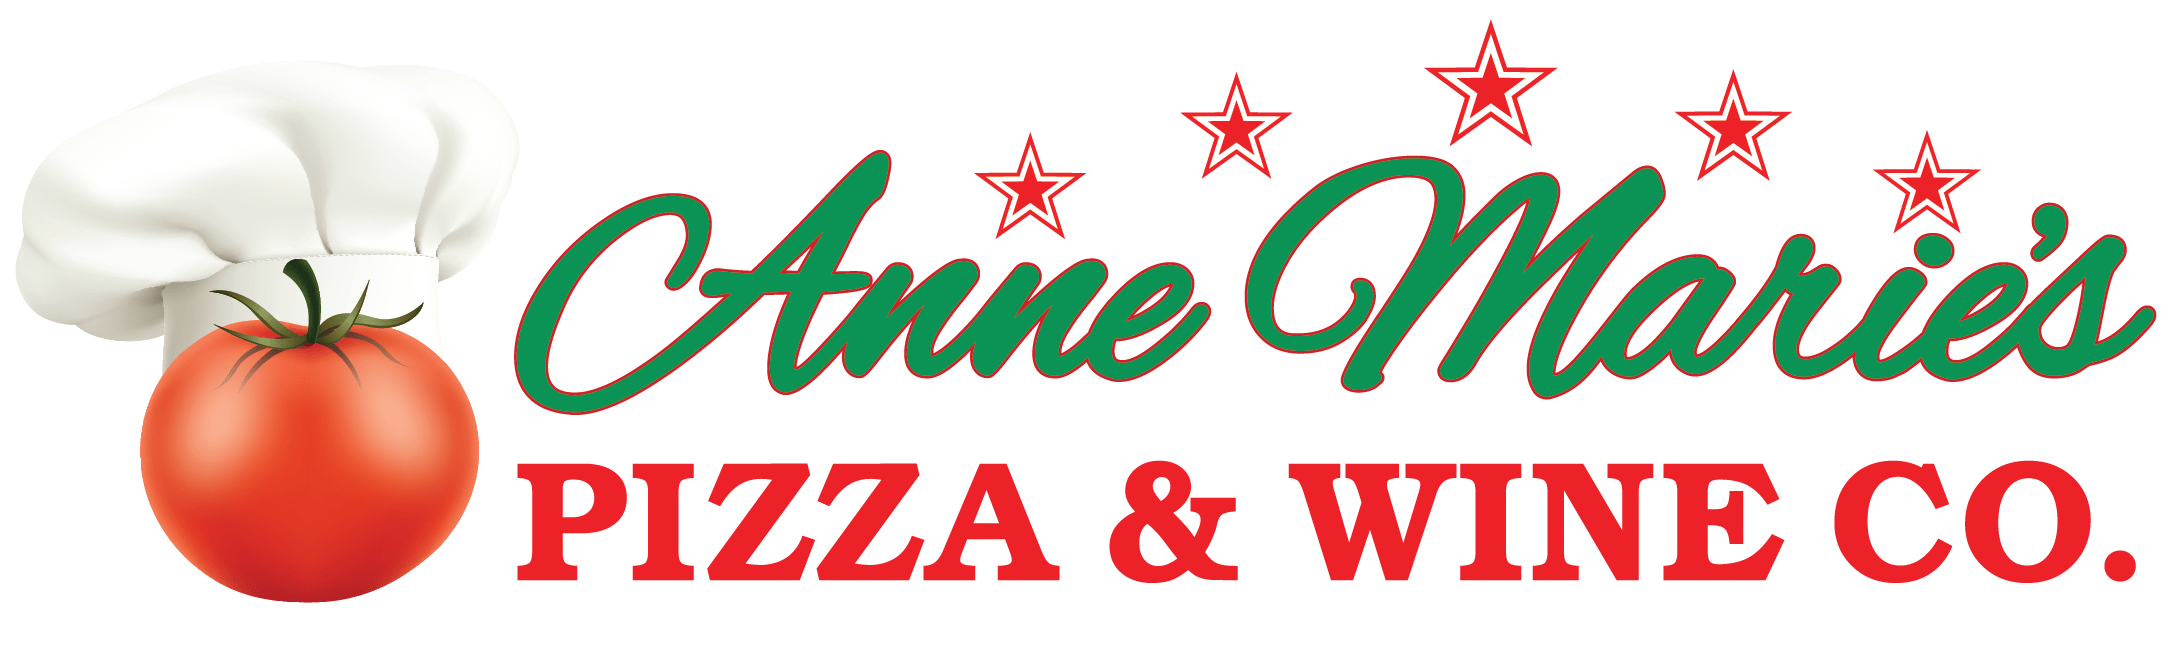 Anne Marie's Pizza & Wine Co. Pompano Beach